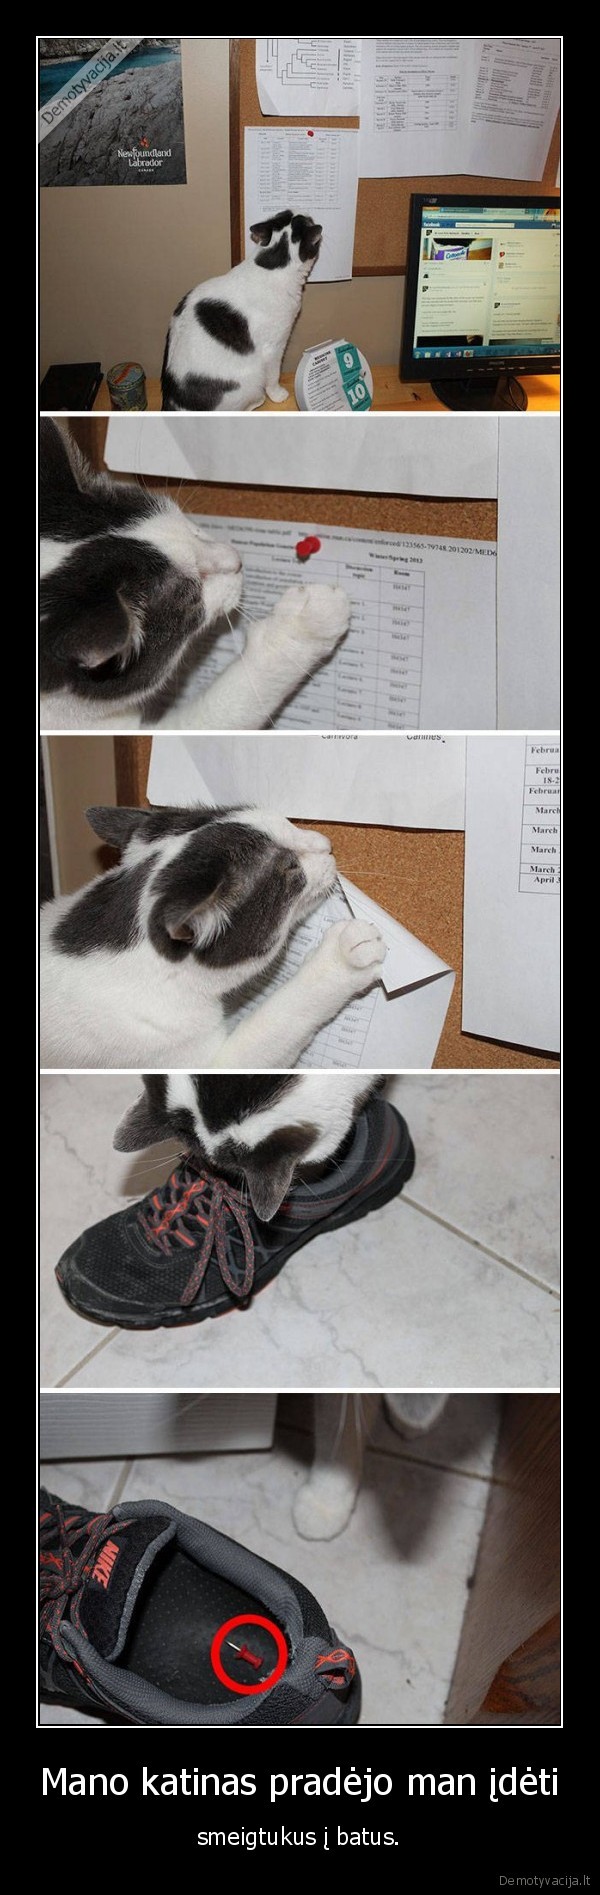 smegitukai,batai,kate,katinas